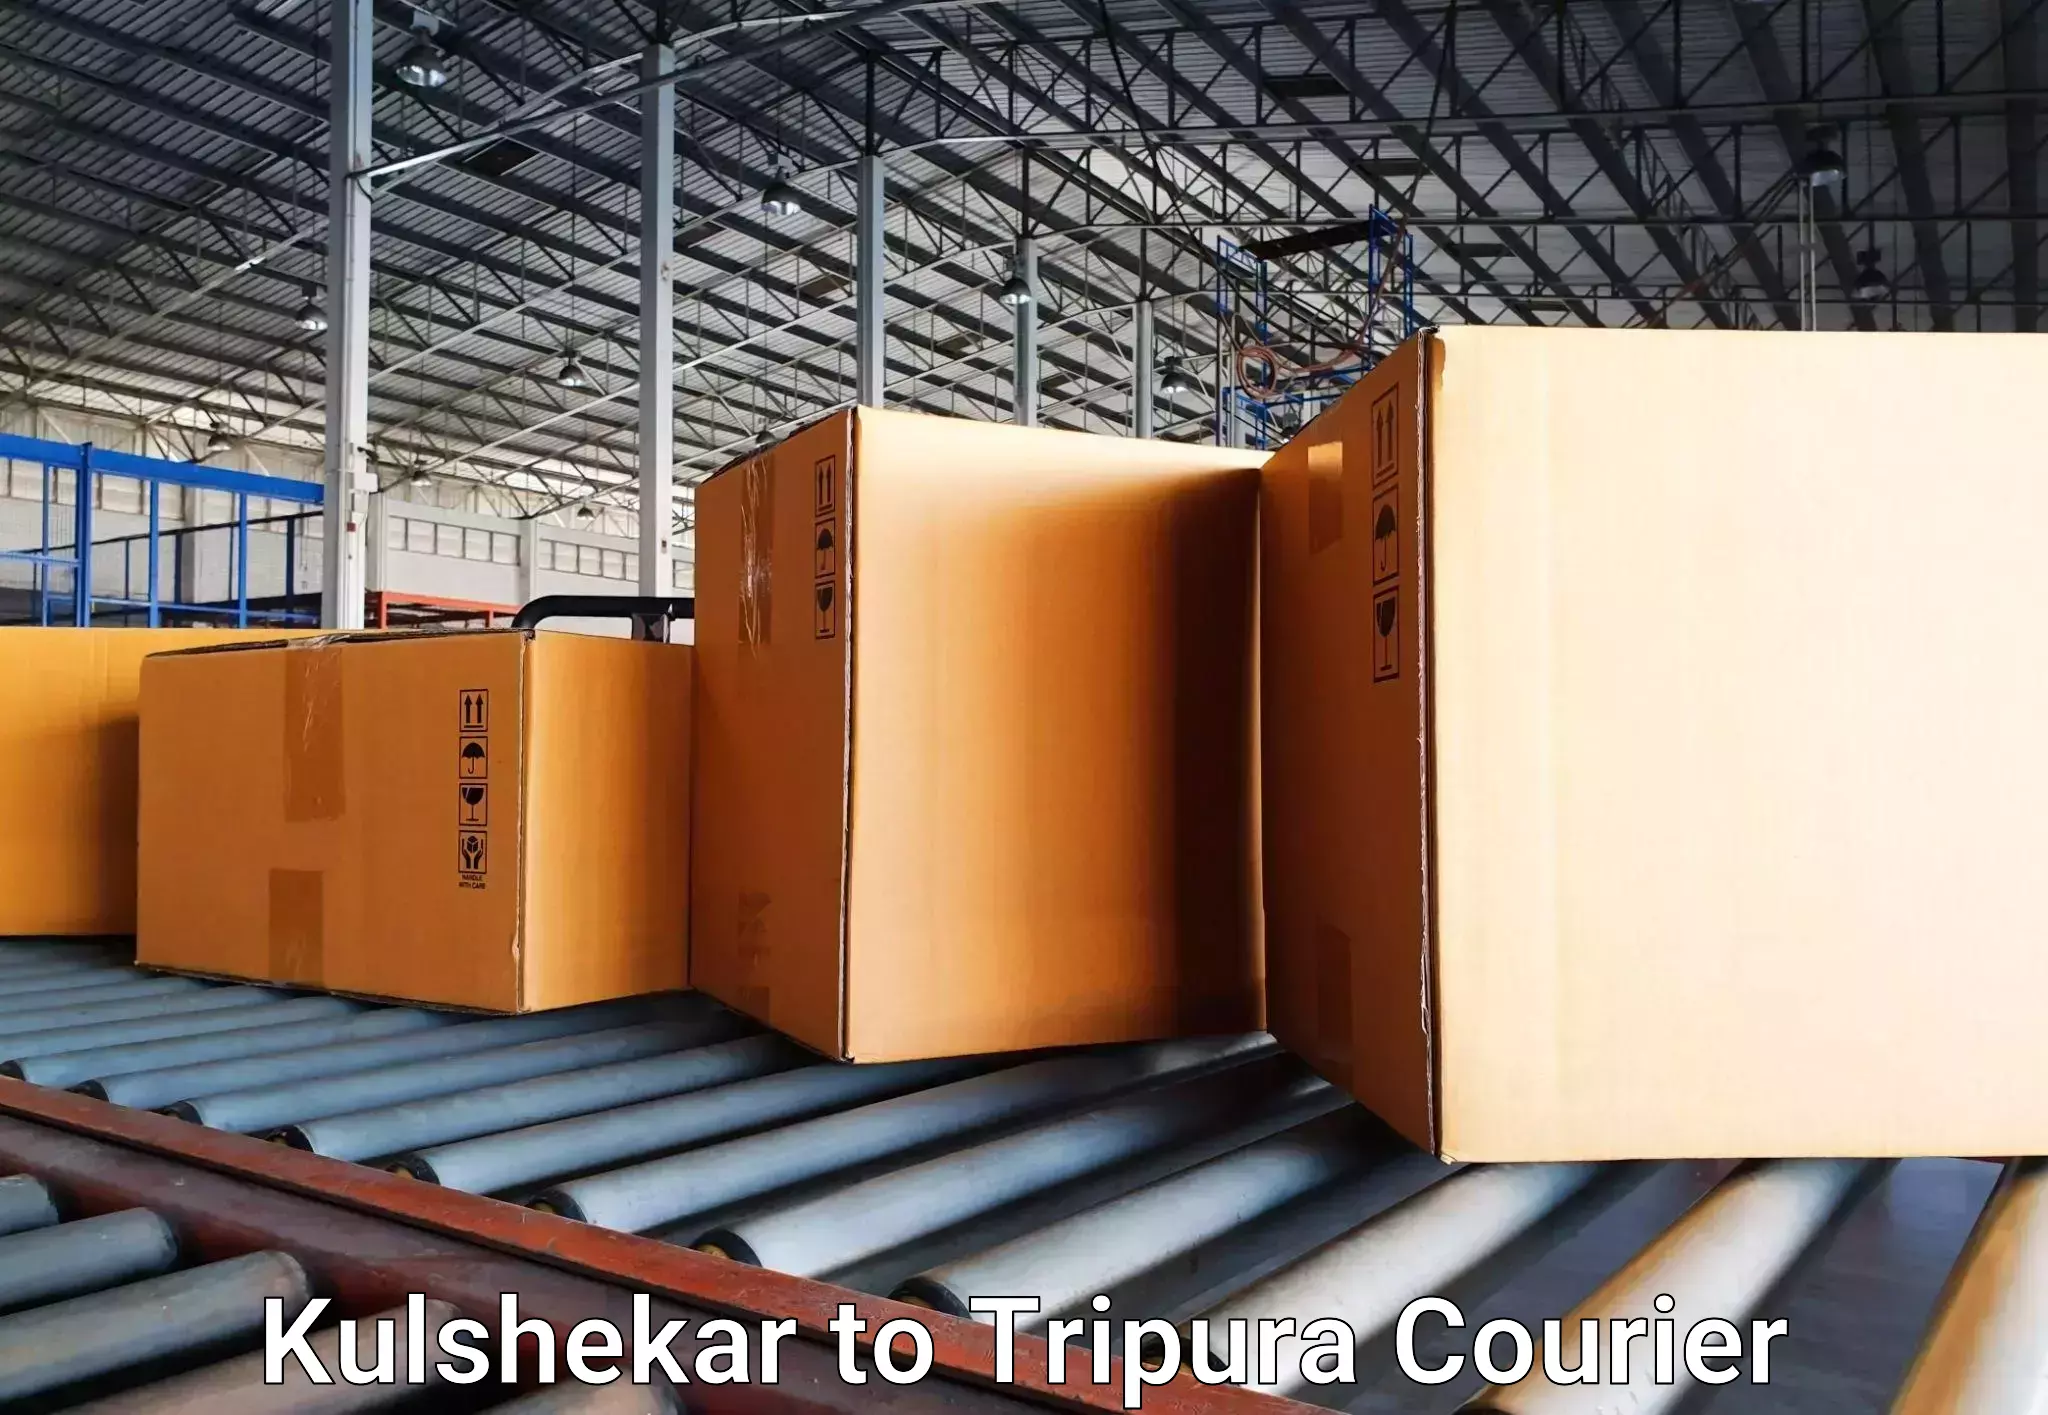 Luggage shipment tracking Kulshekar to Udaipur Tripura